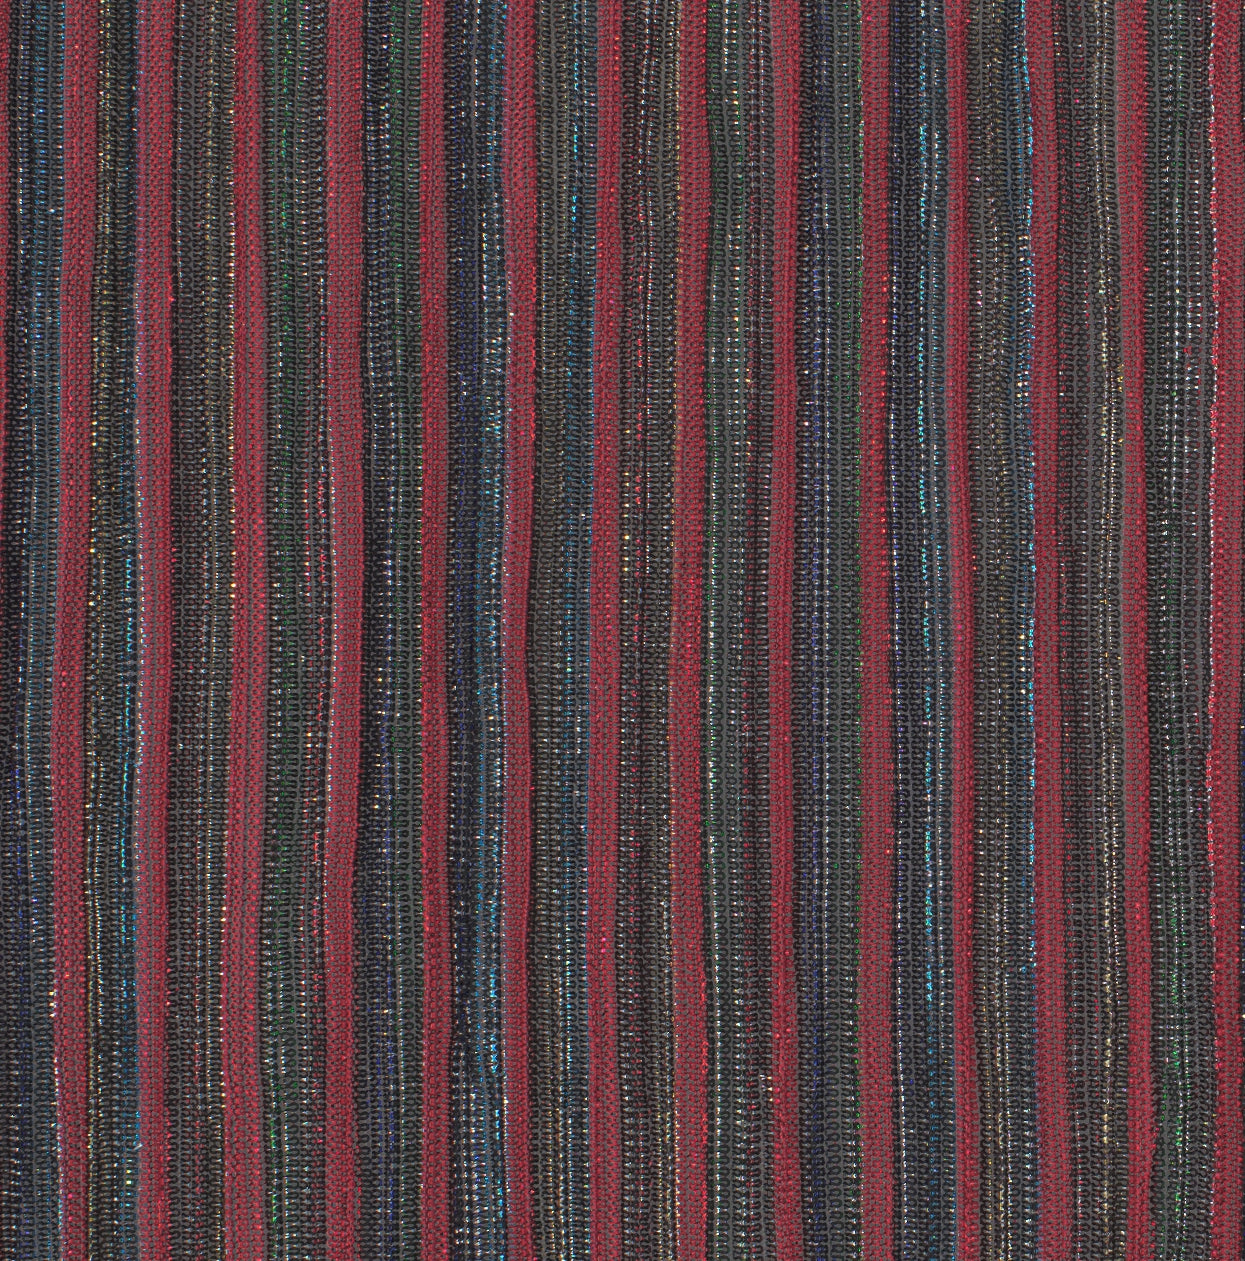 18015-04 Red Muti Metallic Pleat Plain Dyed Blend blend knit metallic plain dyed pleat polyester red Metallic, Pleat - knit fabric - woven fabric - fabric company - fabric wholesale - fabric b2b - fabric factory - high quality fabric - hong kong fabric - fabric hk - acetate fabric - cotton fabric - linen fabric - metallic fabric - nylon fabric - polyester fabric - spandex fabric - chun wing hing - cwh hk - fabric worldwide ship - 針織布 - 梳織布 - 布料公司- 布料批發 - 香港布料 - 秦榮興